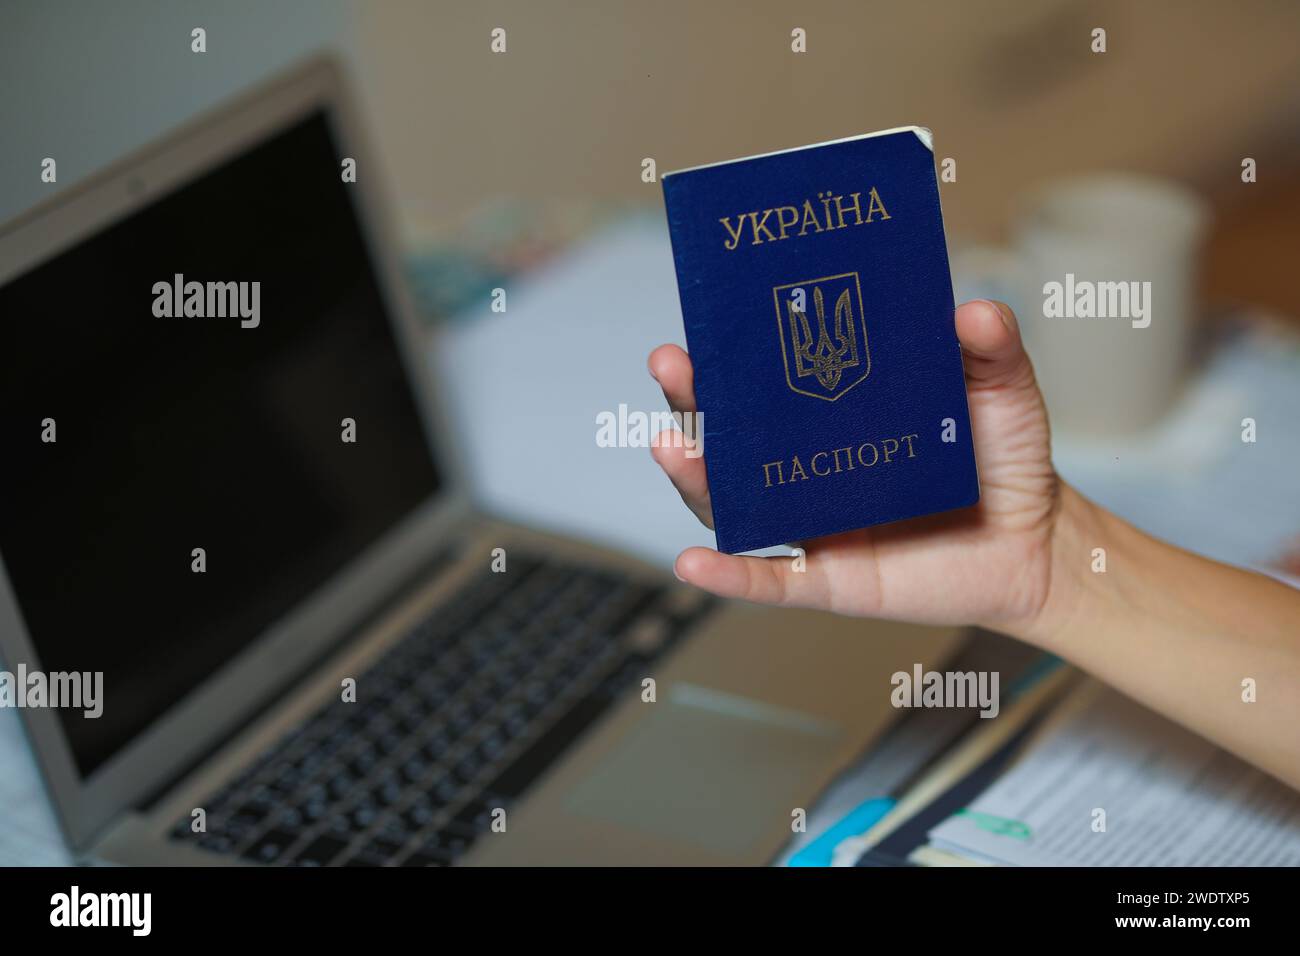 Passaporto ucraino in mano vicino al computer. Foto di alta qualità Foto Stock